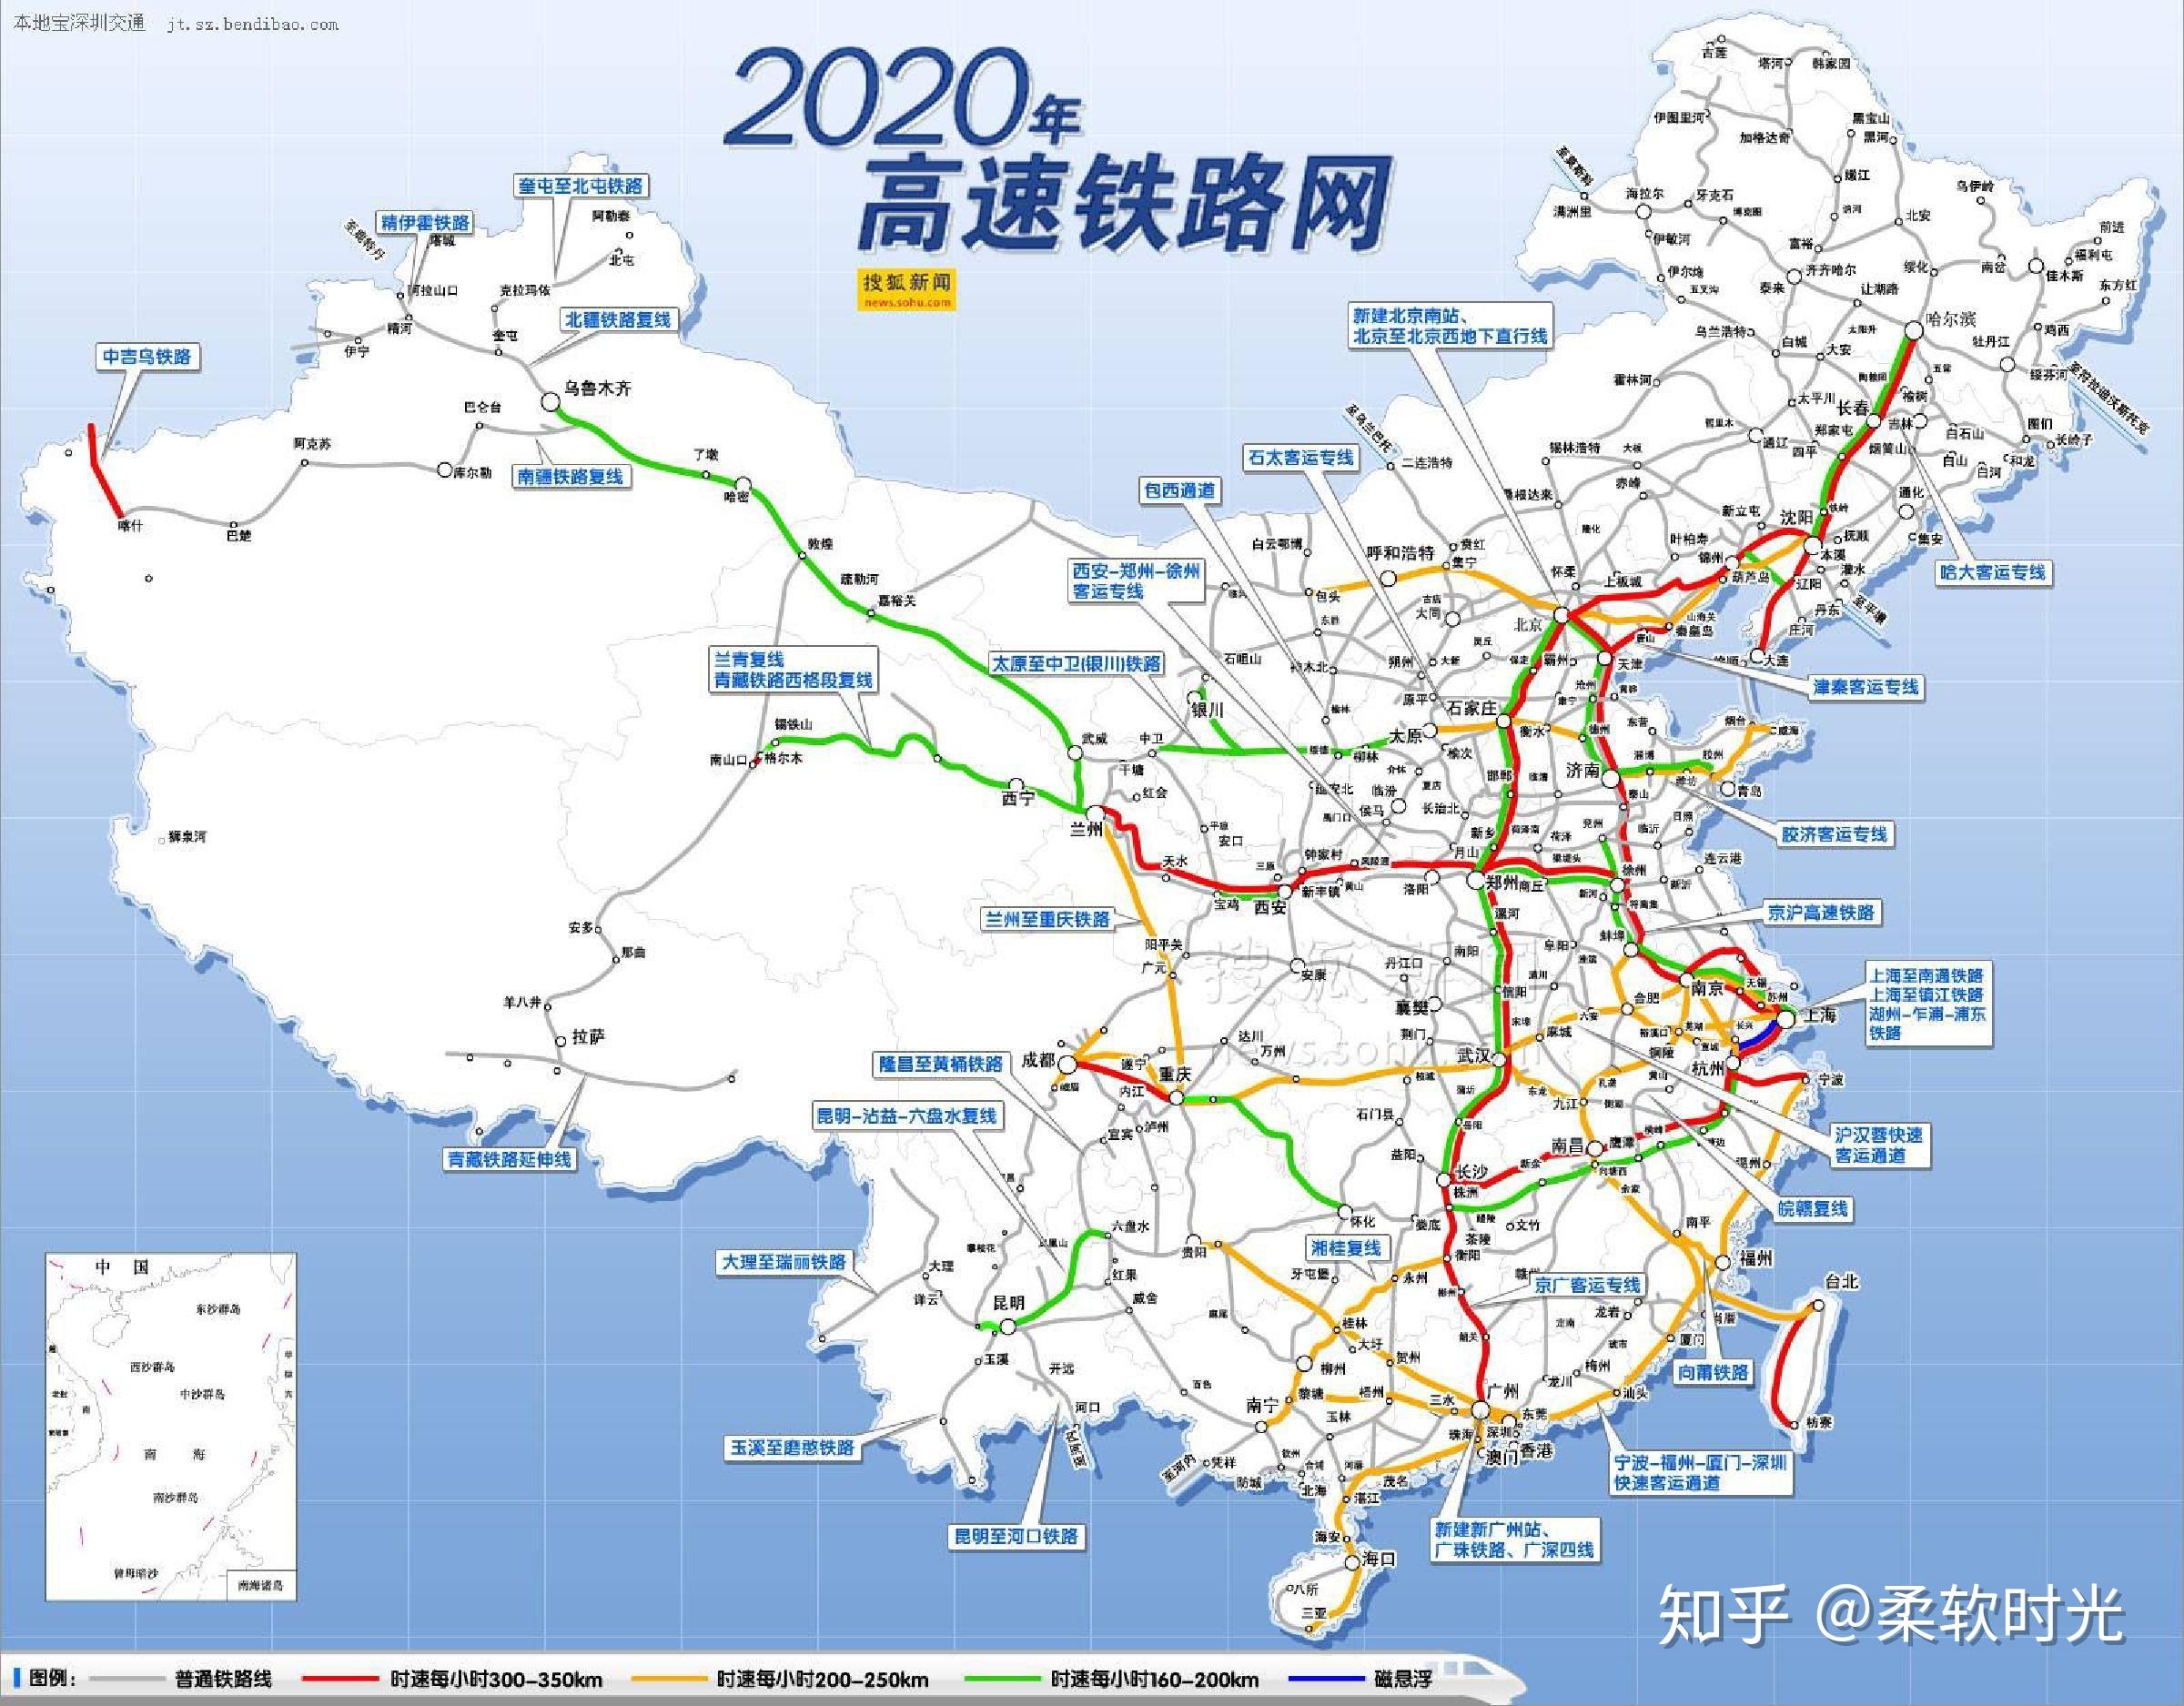 2020高铁地图高清版图片